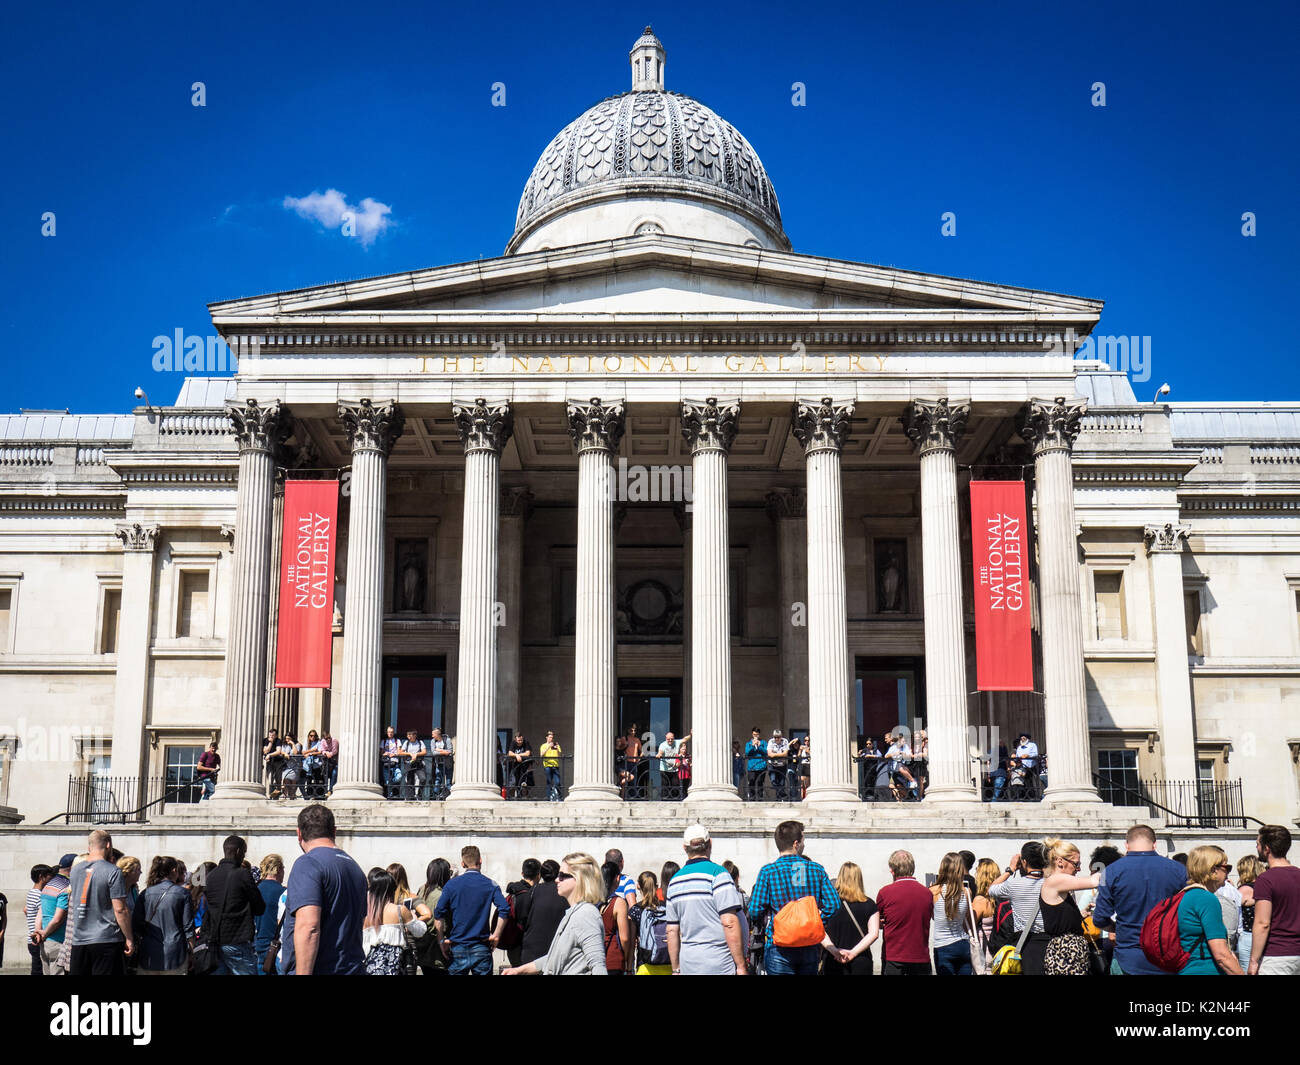 National Gallery di Londra - la folla fuori l'ingresso principale per la National Gallery in Trafalgar Square, Central London, Regno Unito Foto Stock